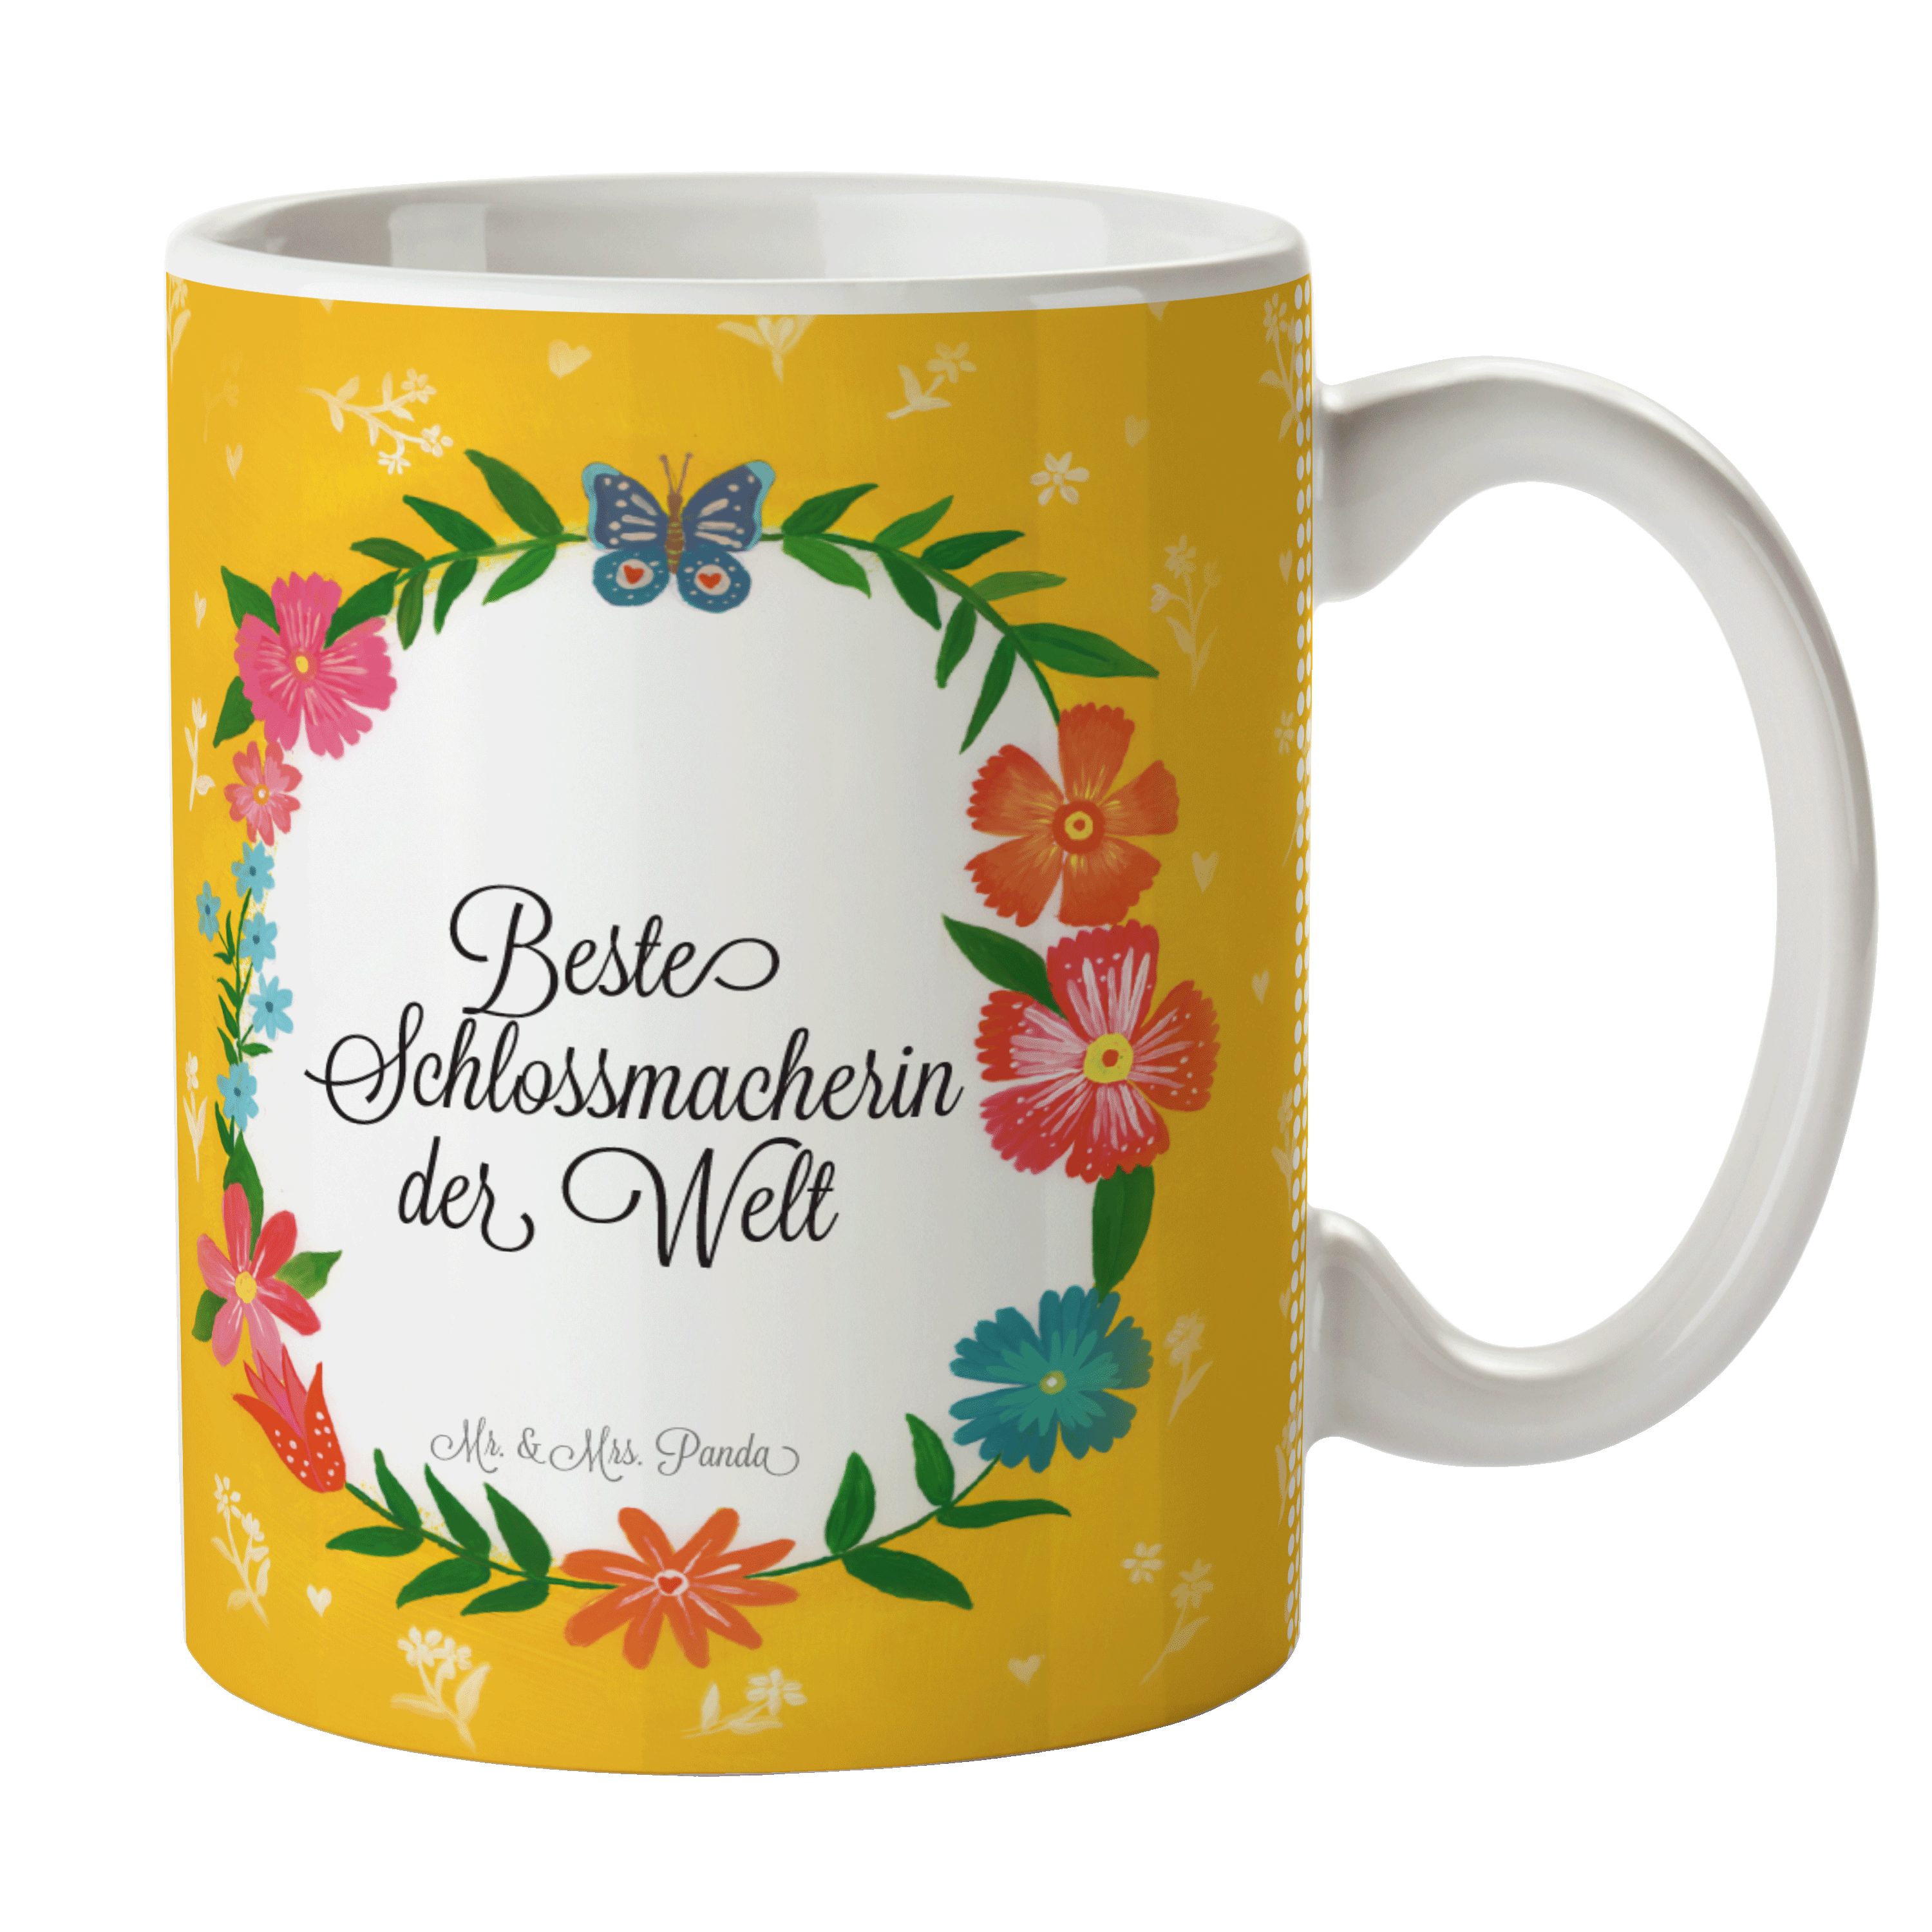 Mr. Tasse Motive, Geschenk, Mrs. Gratulation, Panda Schlossmacherin Kaffeebecher, & Tasse - Keramik